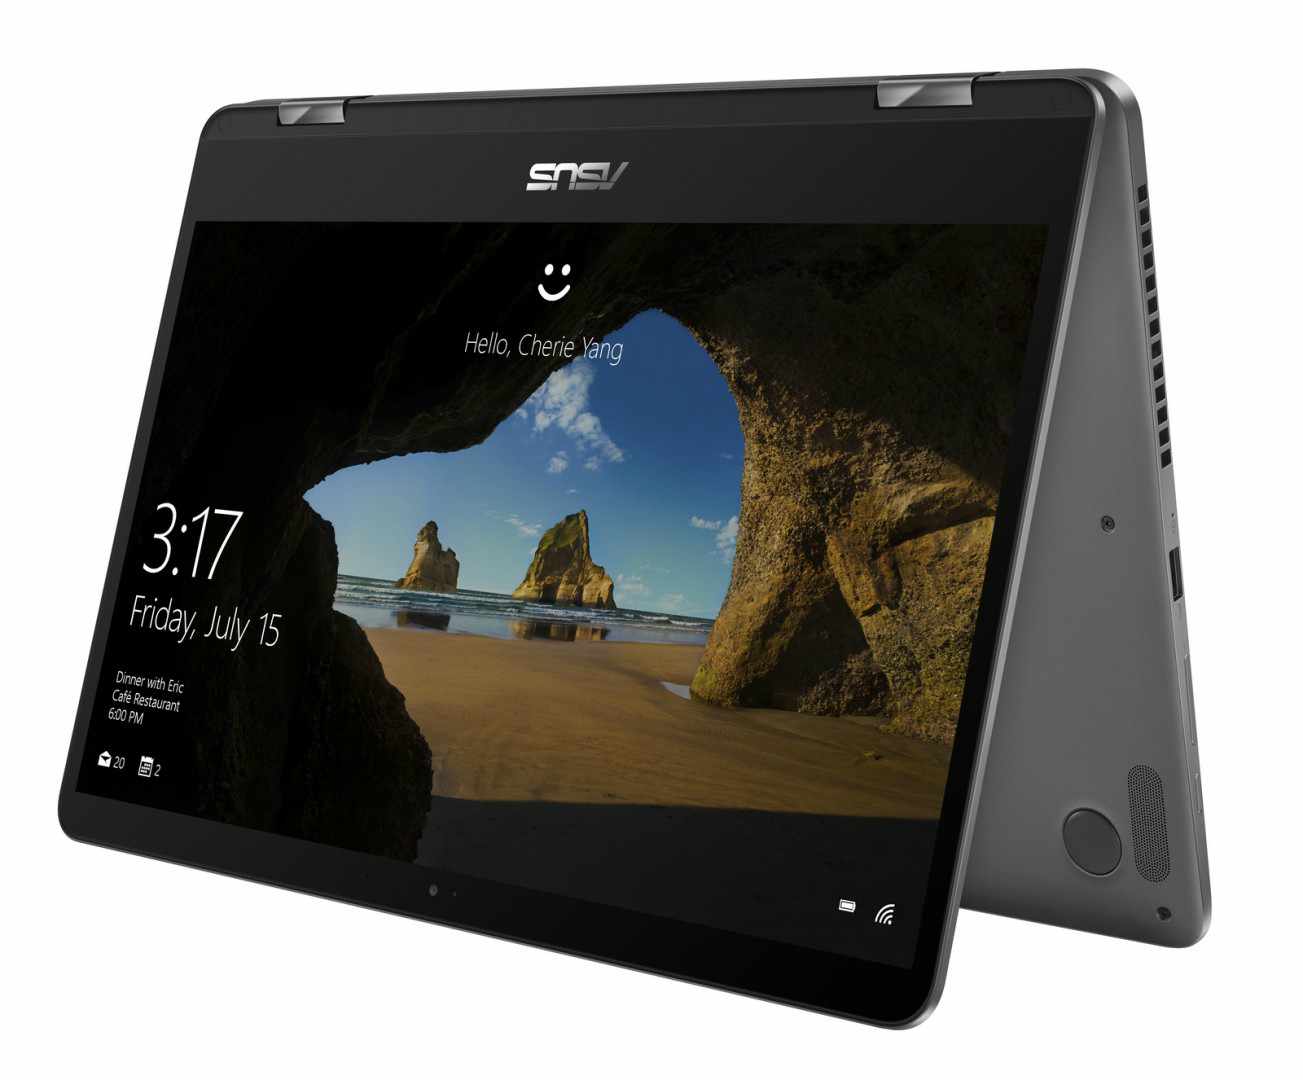 Conheça “Asus ZenBook Flip 15” o novo 2 em1 que você gostaria de ter em seu dia a dia